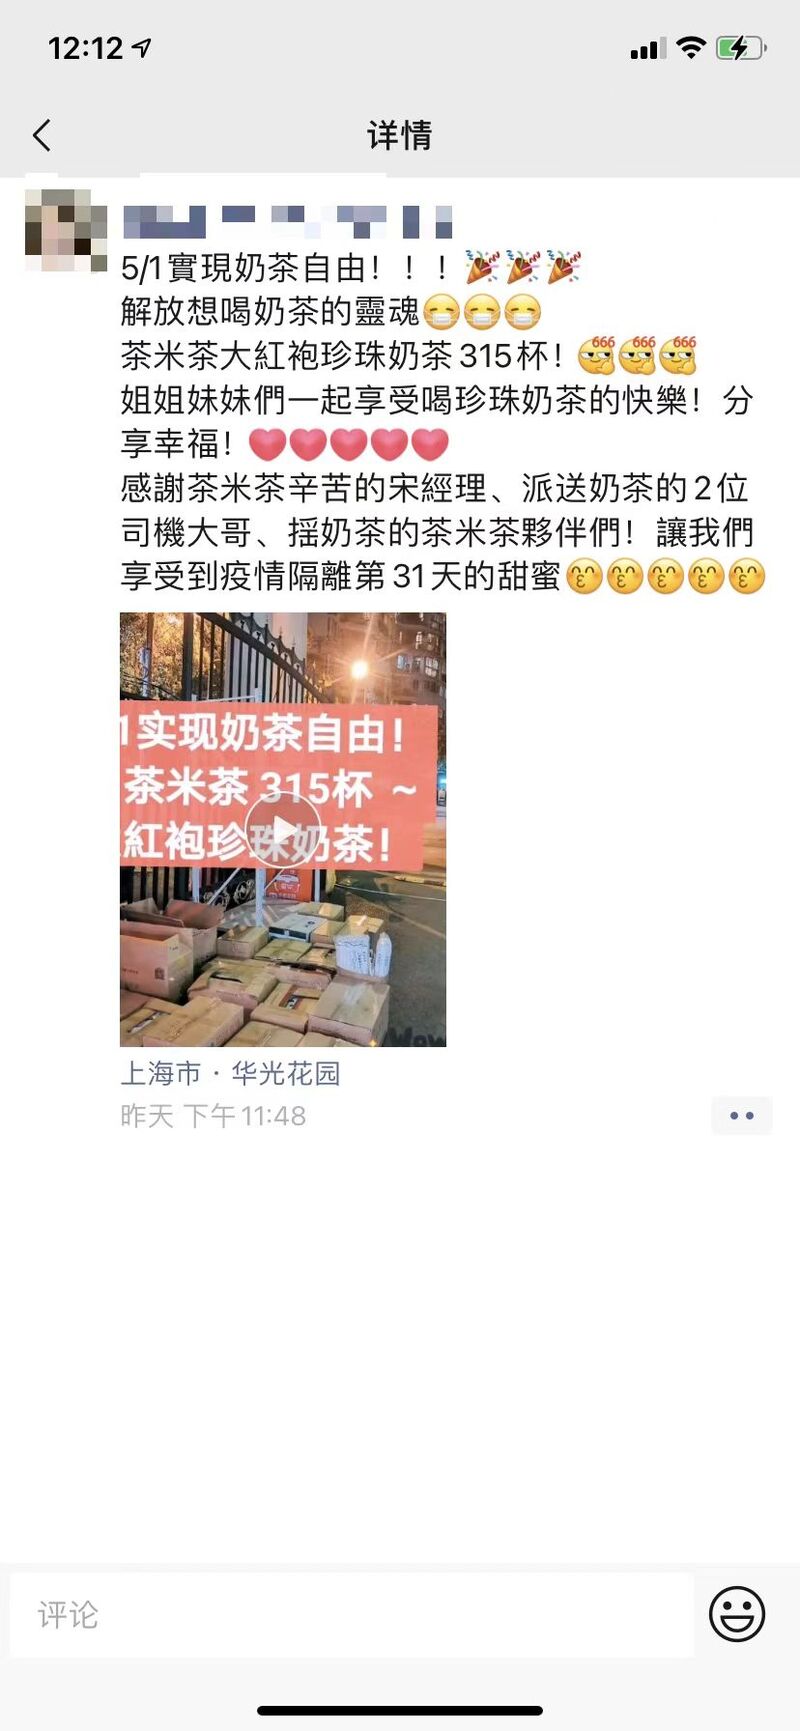 上海又一家连锁火锅企业复工 奶茶也能团购了 熟悉的烟火气回来了